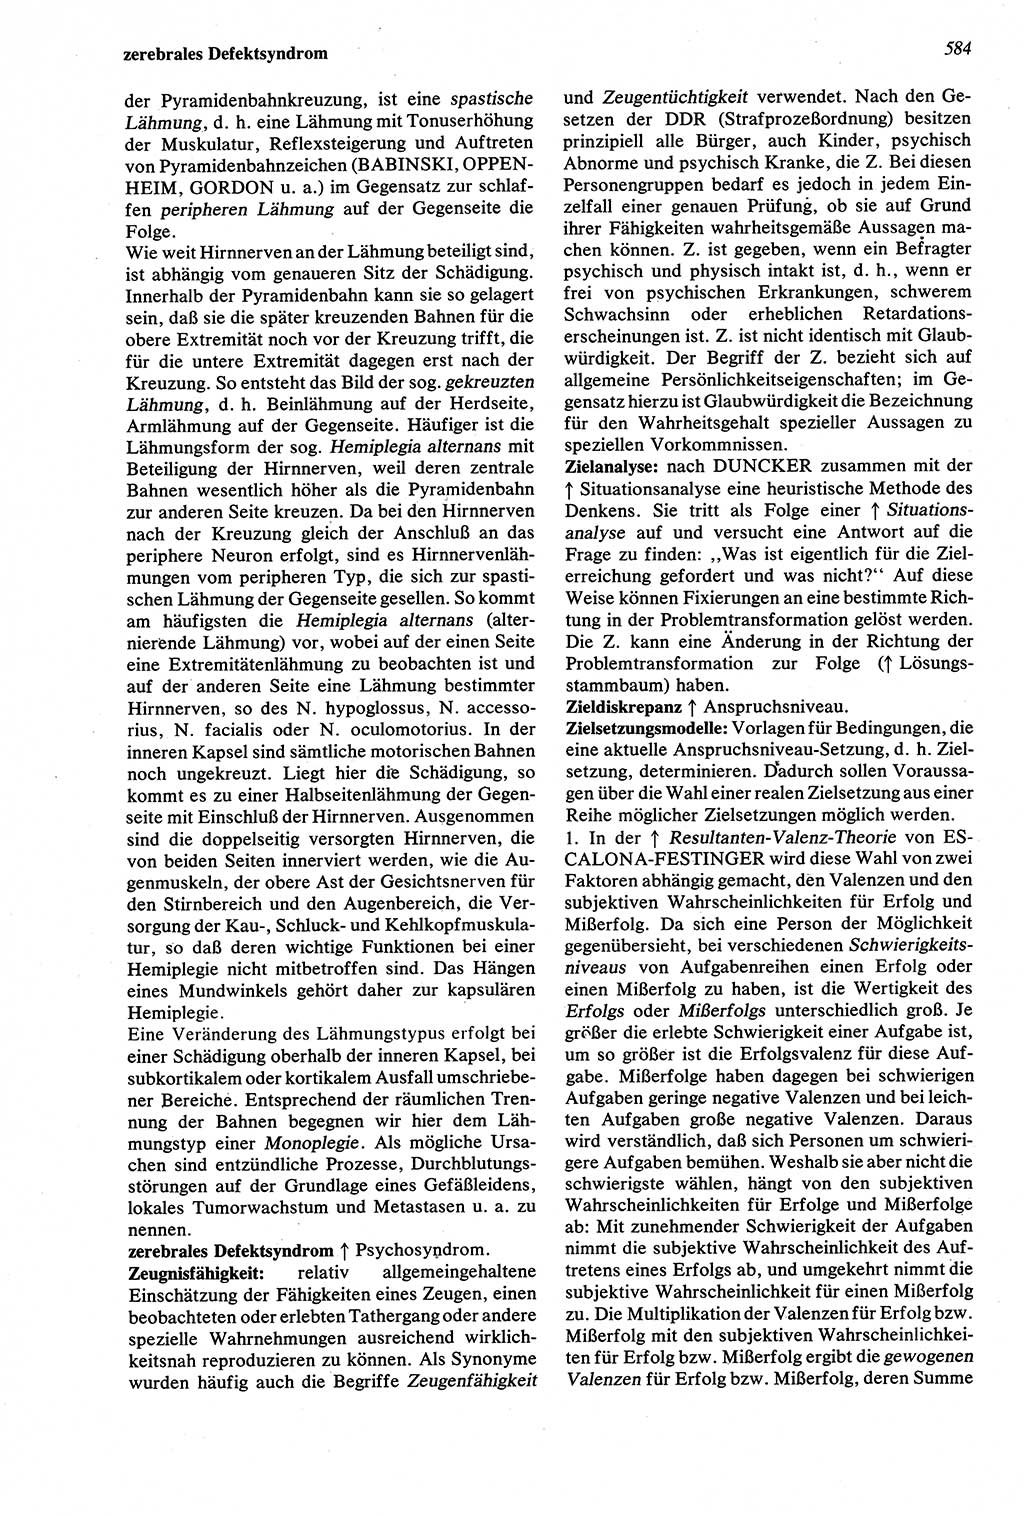 Wörterbuch der Psychologie [Deutsche Demokratische Republik (DDR)] 1976, Seite 584 (Wb. Psych. DDR 1976, S. 584)